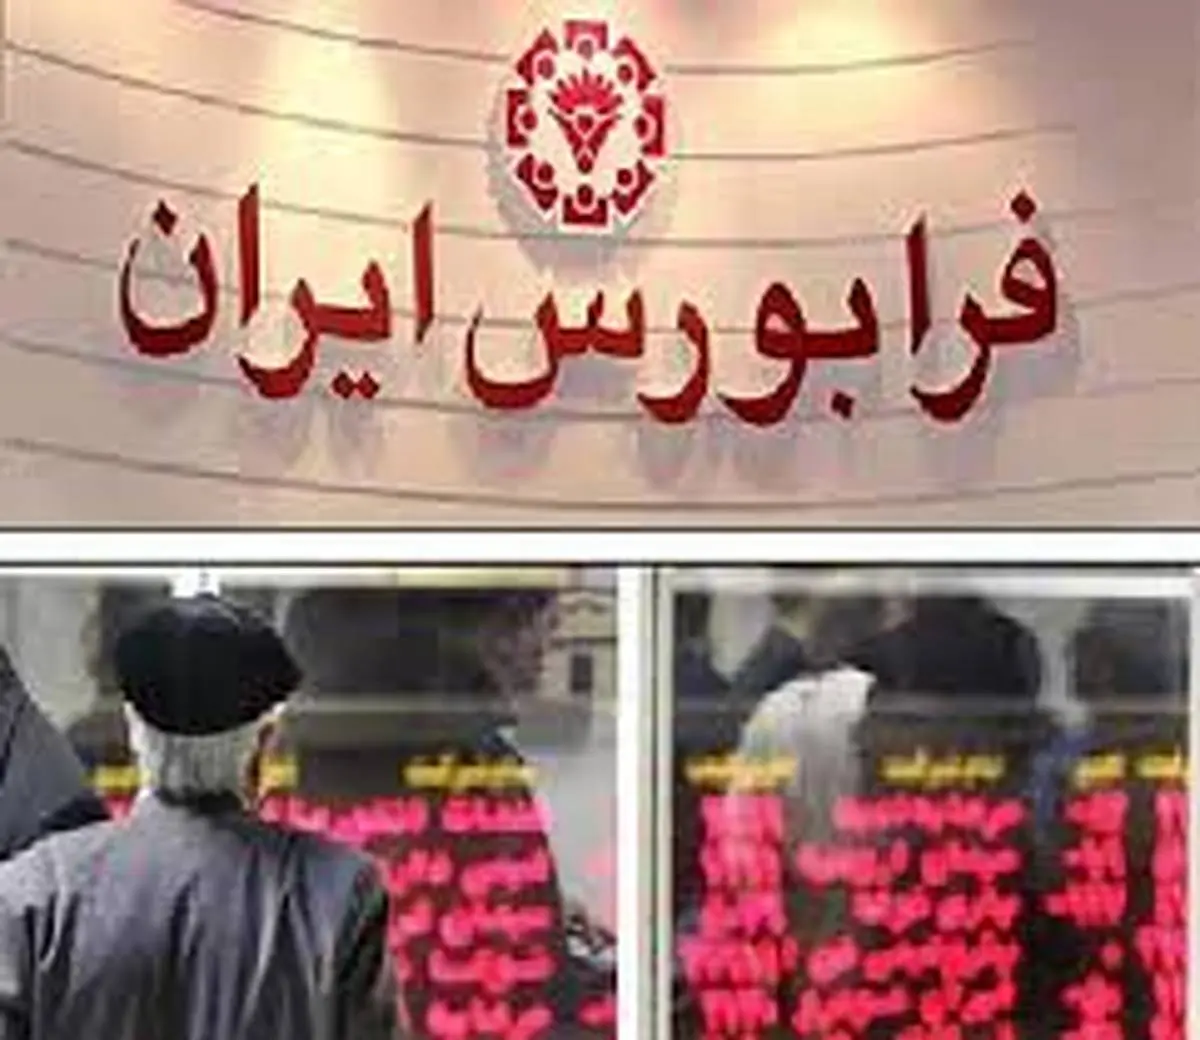 فرابورس ایران میزبان 4 عرضه بلوکی طی نیمه دوم خردادماه